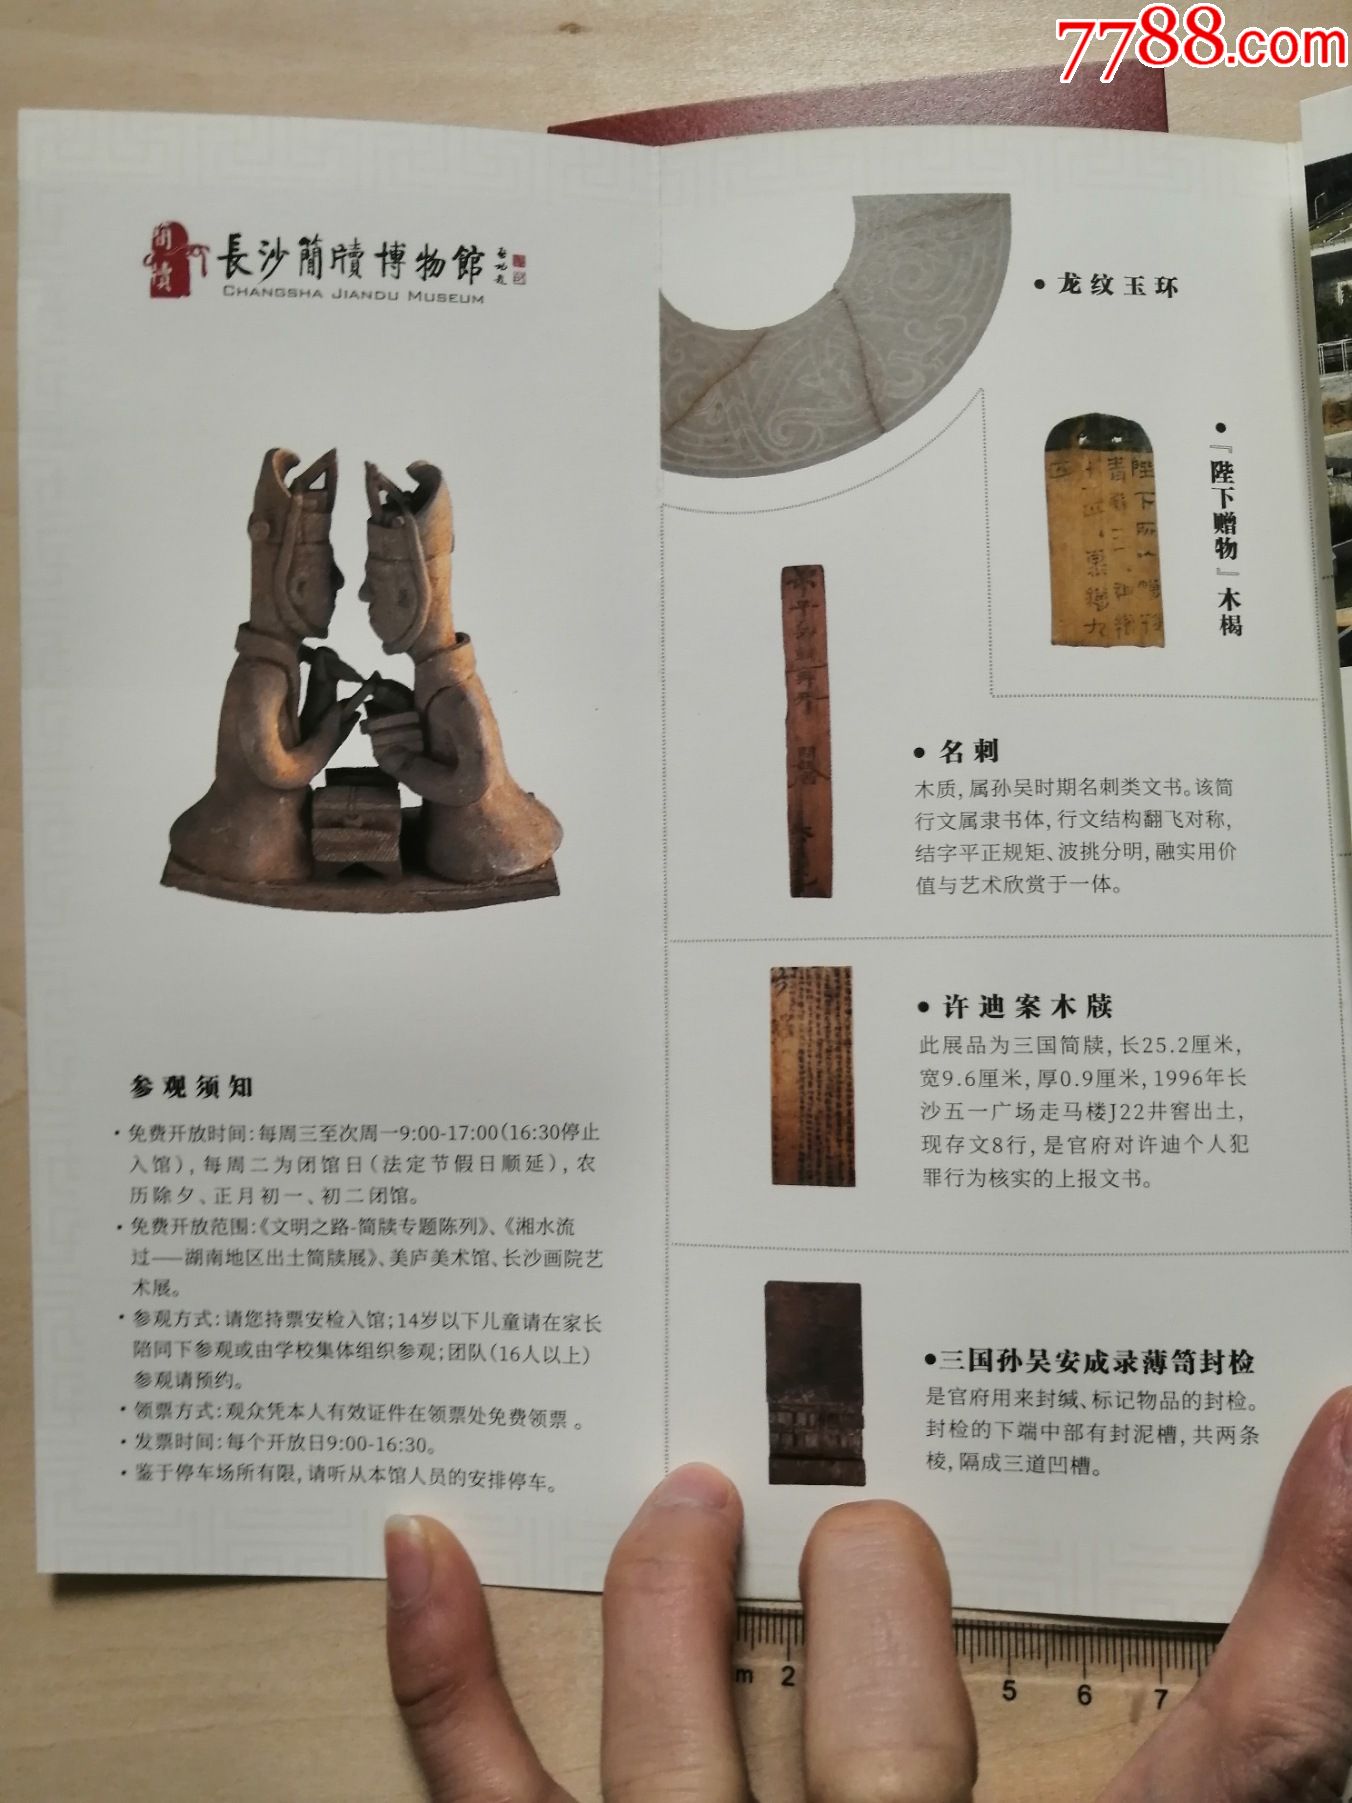 长沙简牍博物馆宣传册单本价